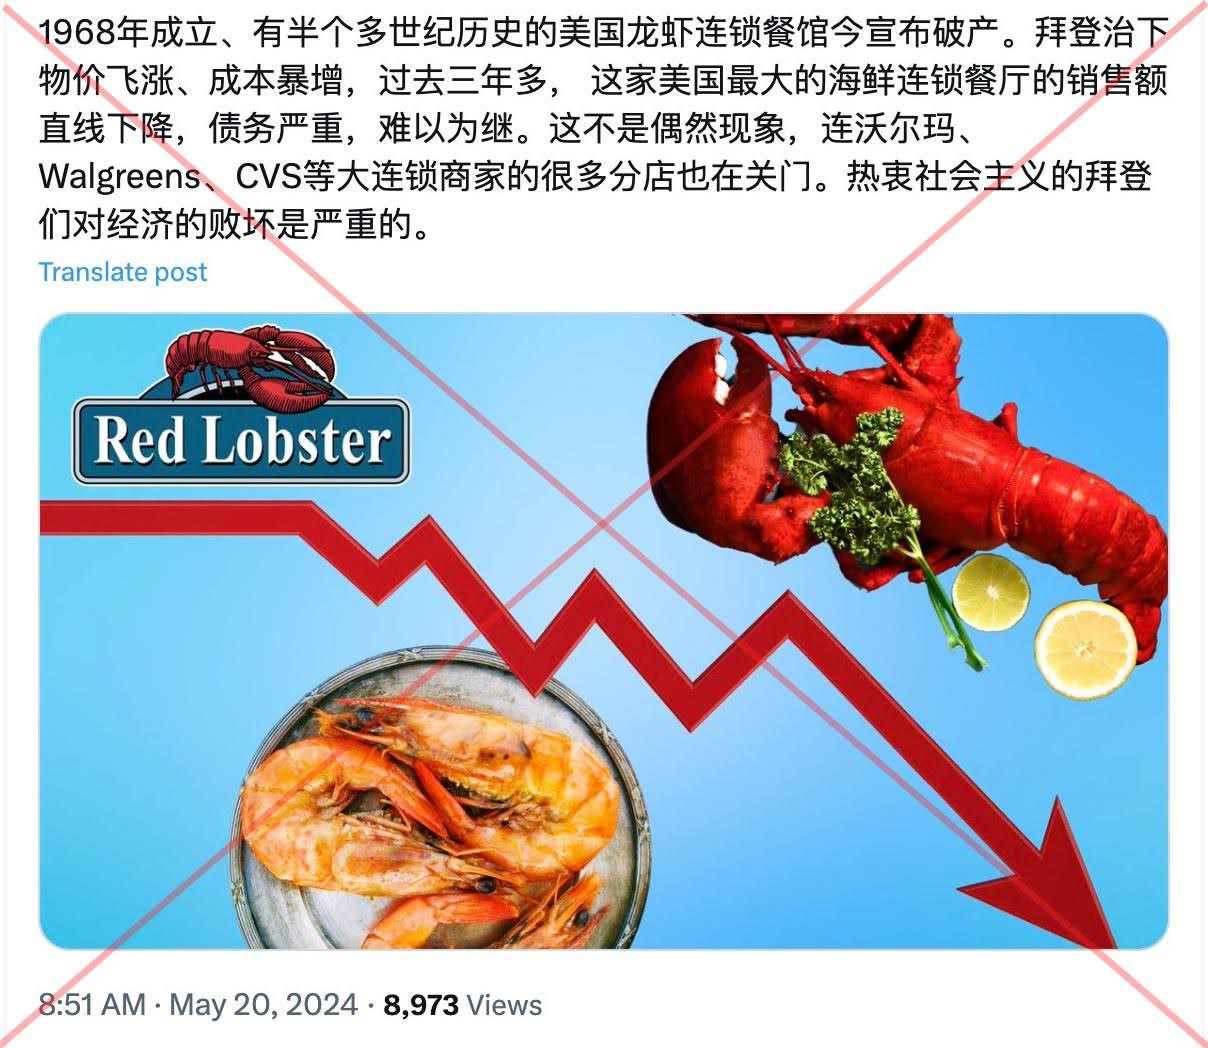 著名海鲜连锁店红龙虾(Red Lobster)本周日申请破产。此前一周，该品牌全美近100家门店关门。这个决定让右翼又找到了攻击拜登政府的新证据，他们说，看，就是拜登搞的“社会主义”害这家公司倒闭的。